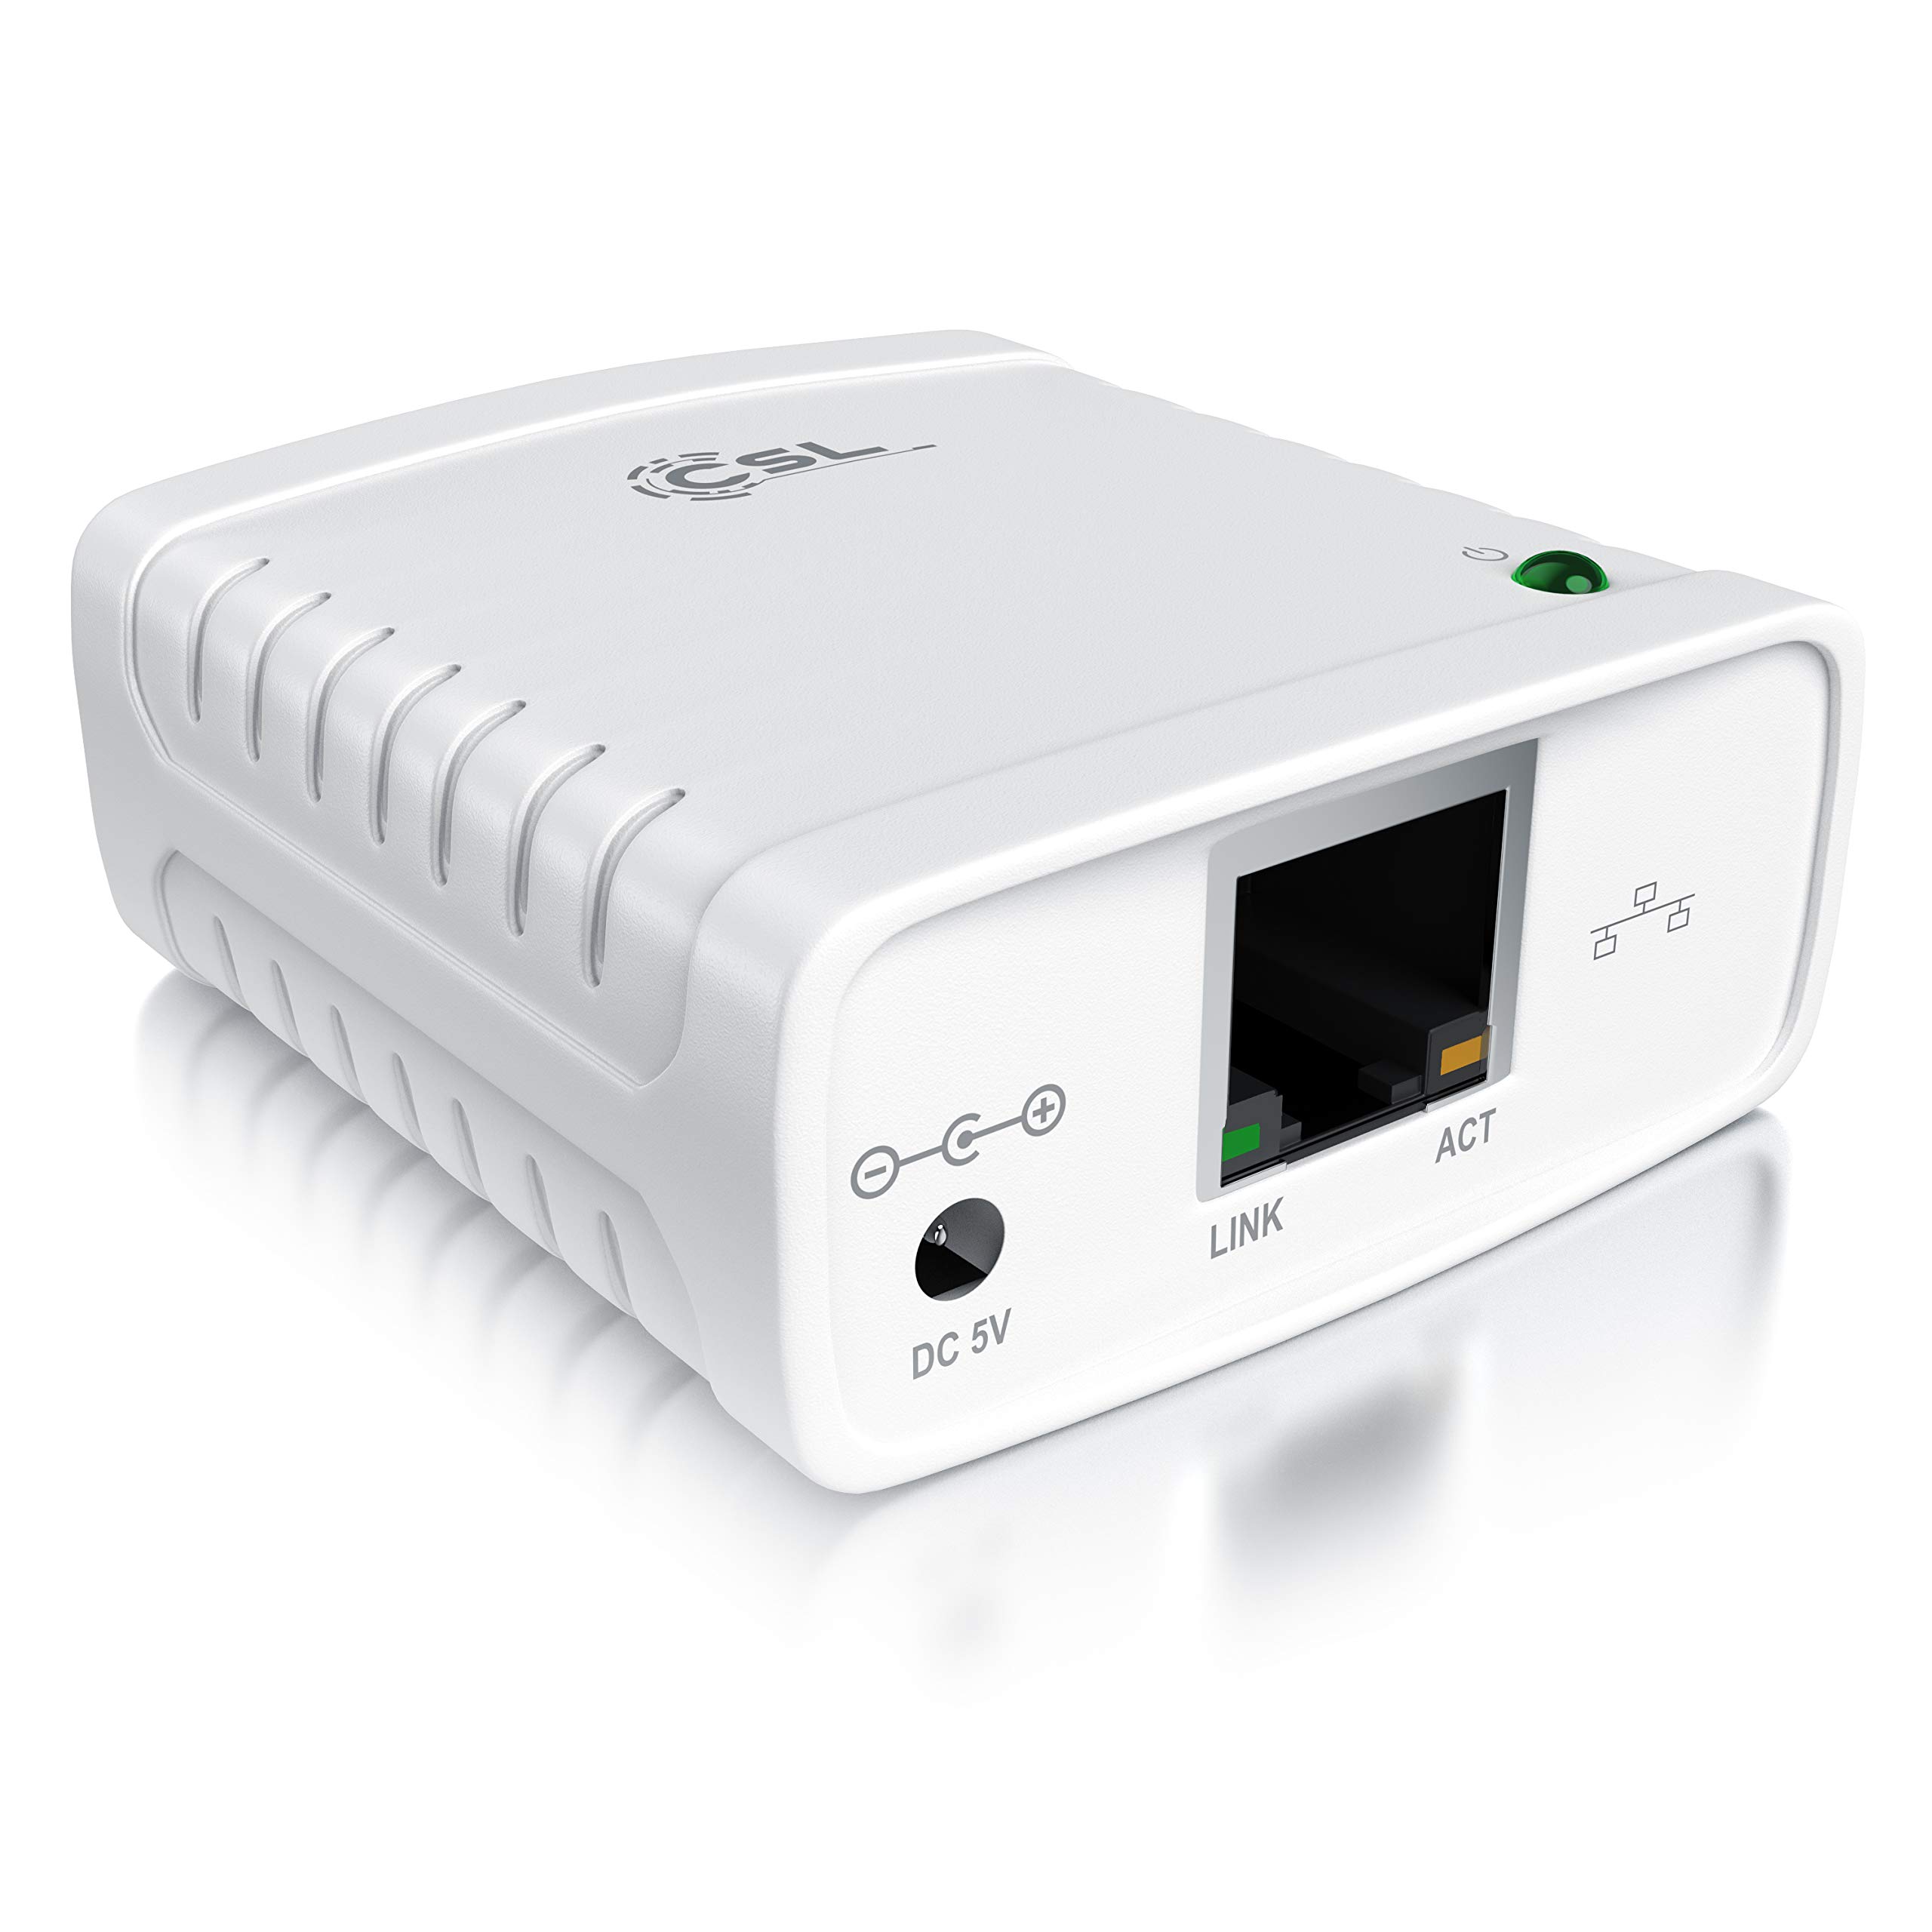 CSL - LAN Printserver Druckerserver - Fast Ethernet - USB2.0 High Speed - LRP Print Server für Windows – Netzwerk USB zu RJ45 - DHCP fähig, TCP/IP – inkl. Netzteil und Ethernetkabel – Neues Modell